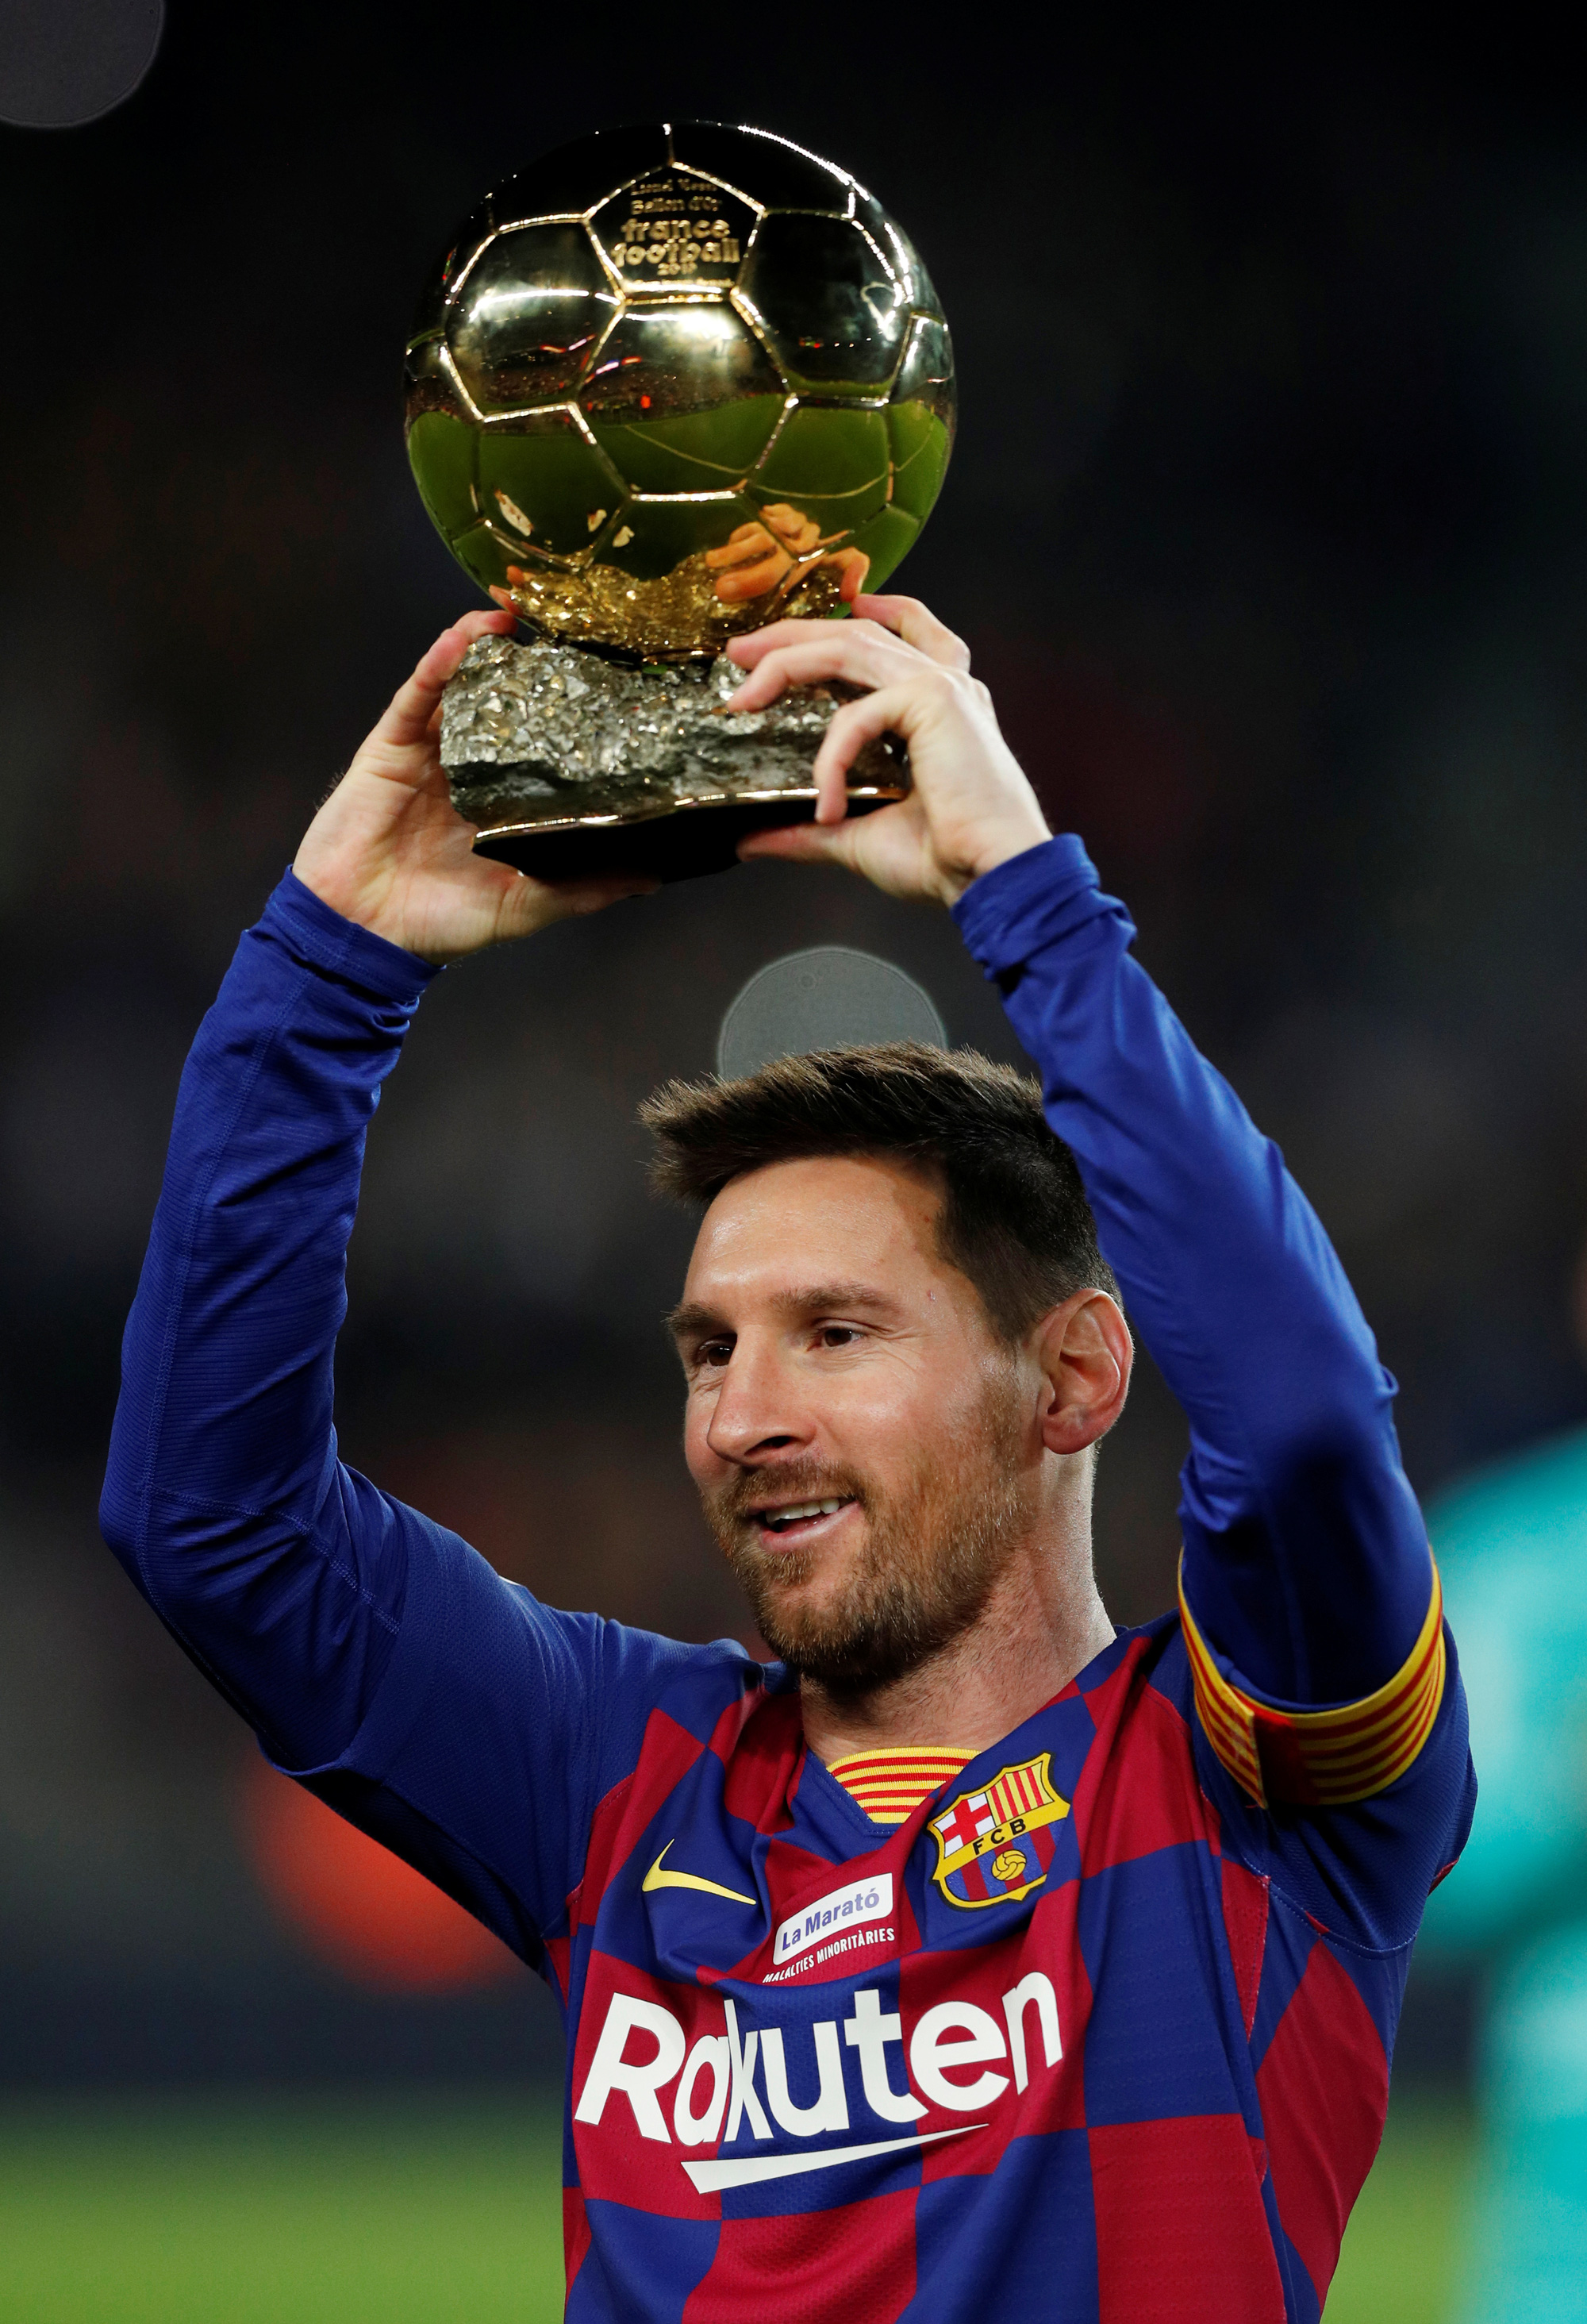 Messi hat-trick là một diễn biến cực kỳ mãn nhãn của một trận đấu bóng đá. Nhờ những pha ghi bàn tuyệt đẹp và cái tên Messi nổi tiếng, trận đấu đã trở nên cực kỳ kịch tính. Hãy xem bức ảnh nơi Messi vui mừng cùng đồng đội sau khi ghi hat-trick chỉ cho bạn thấy sự nghị lực và kỹ năng thi đấu của anh.